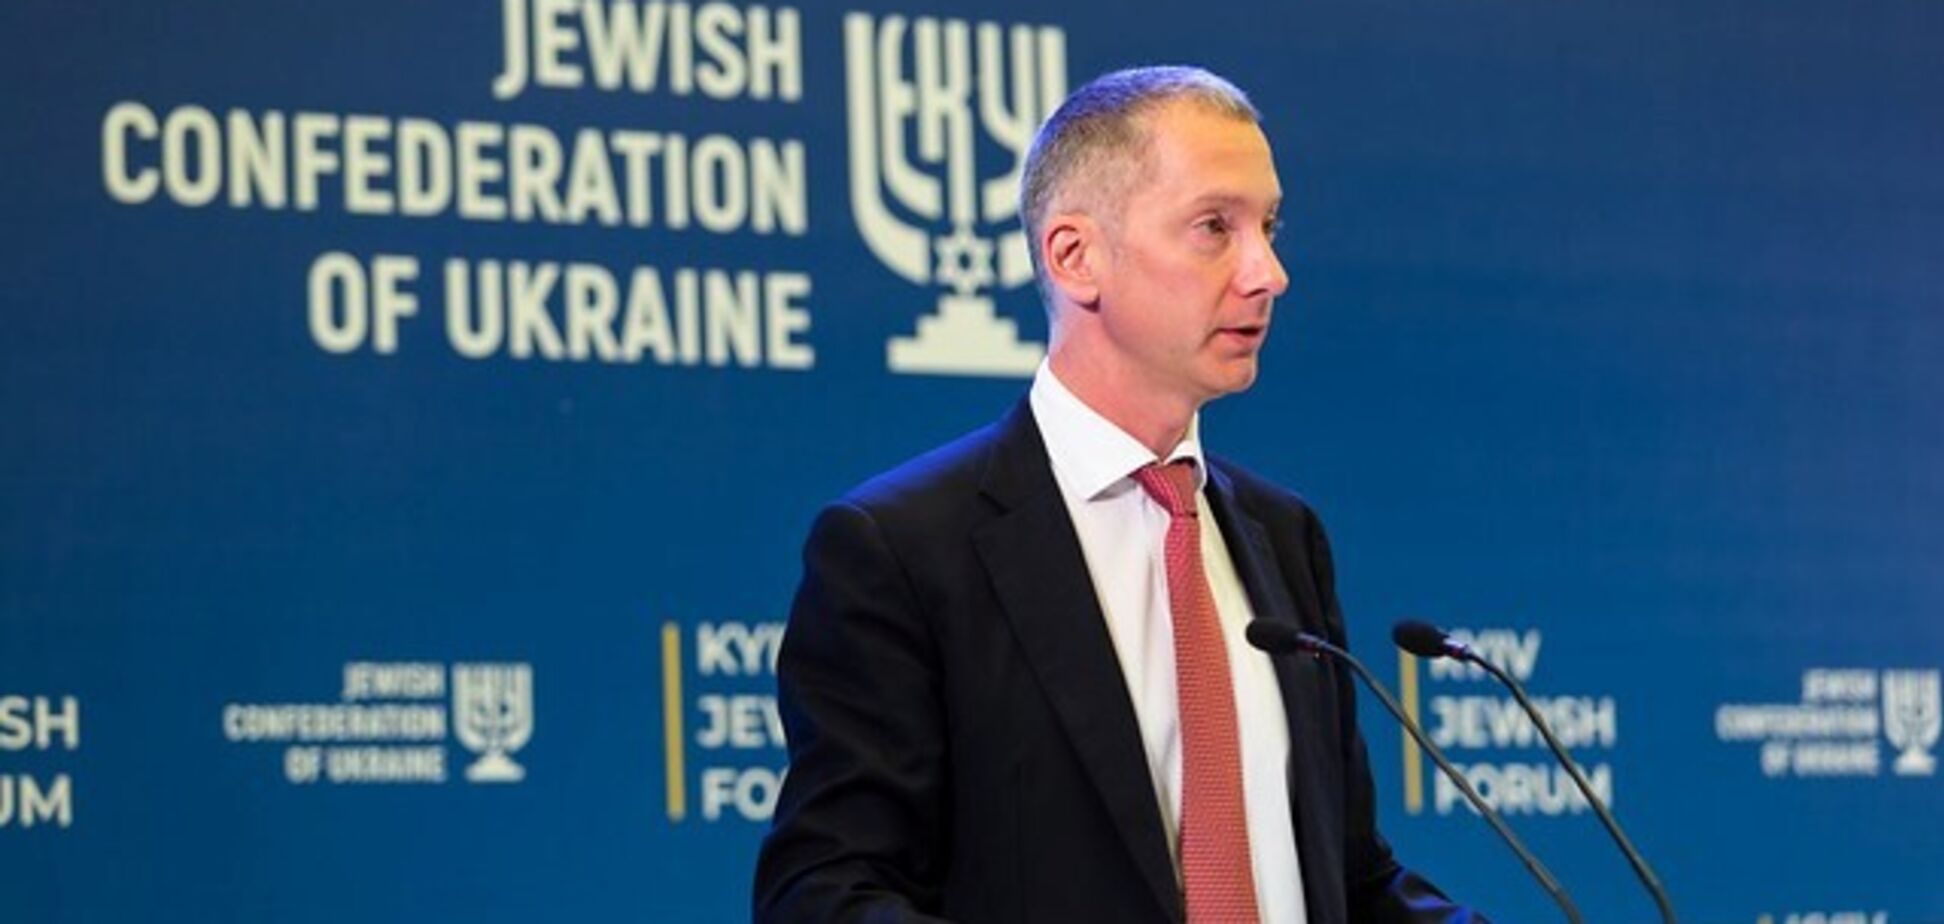 Третий Kyiv Jewish Forum соберет мировых лидеров 15-16 декабря – Борис Ложкин